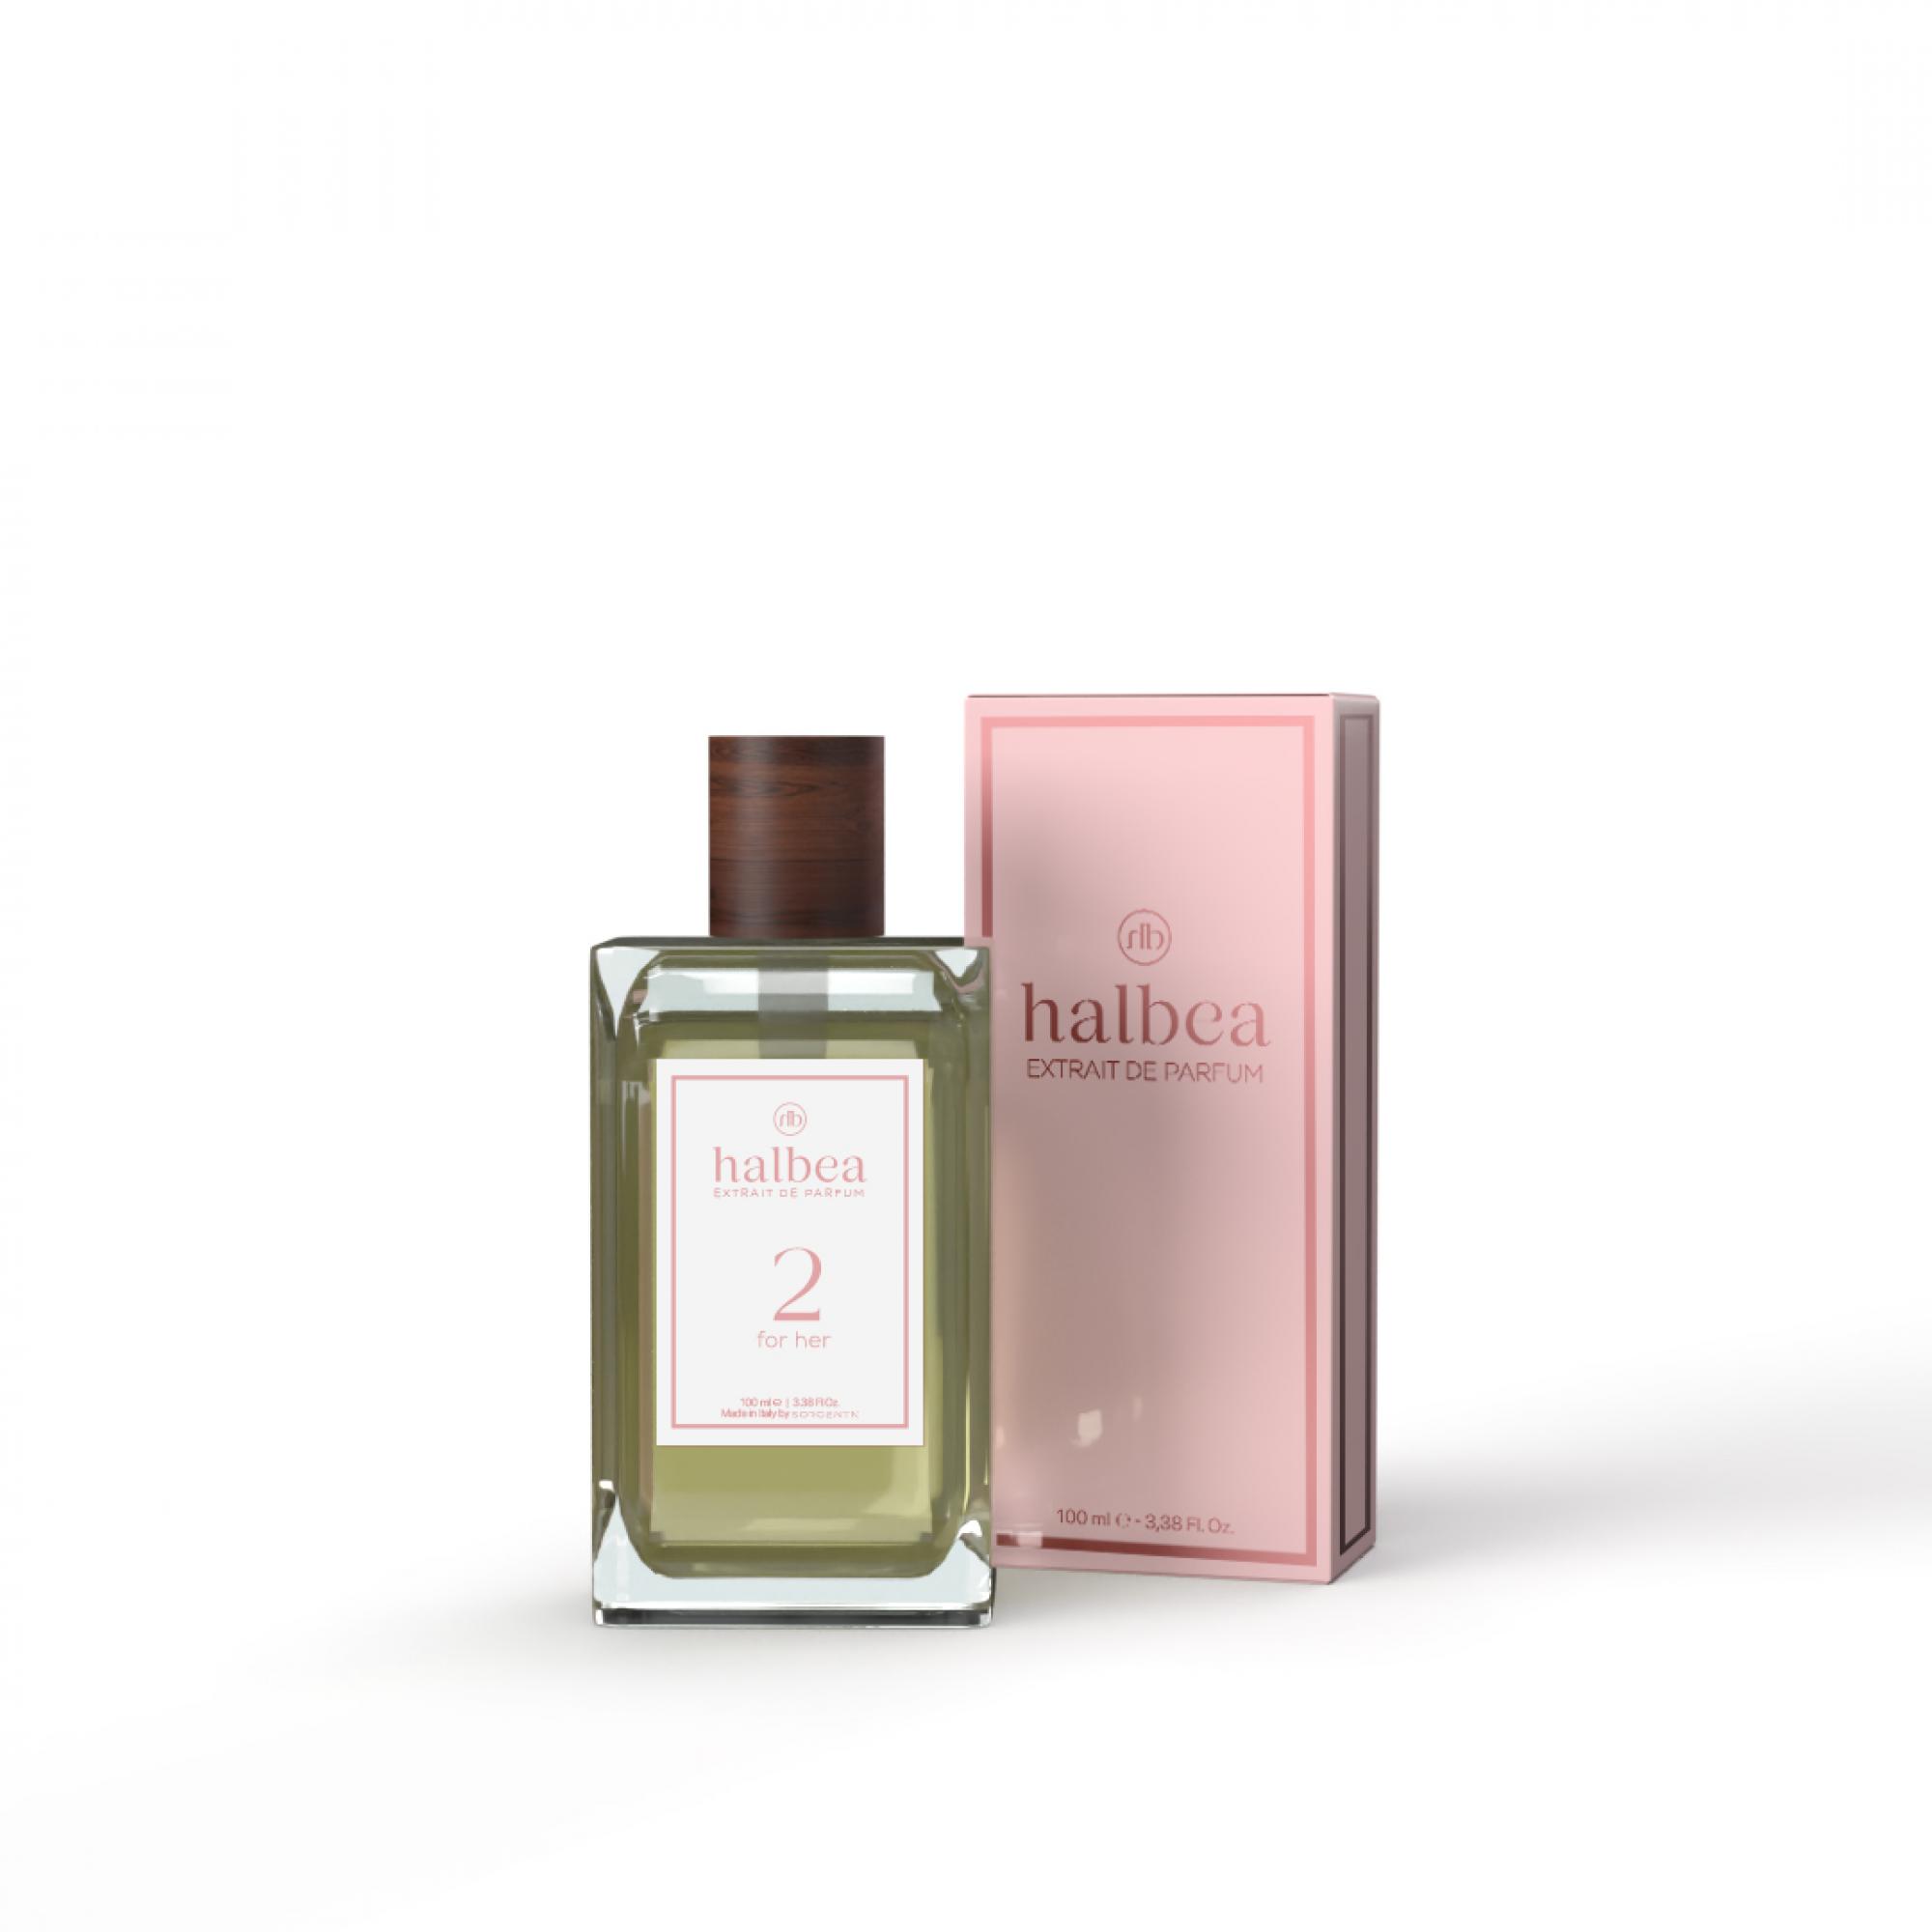 Halbea Parfum Nr. 2 insp. by Yves Saint Laurent Opium 100ml Sorgenta Duftzwillinge